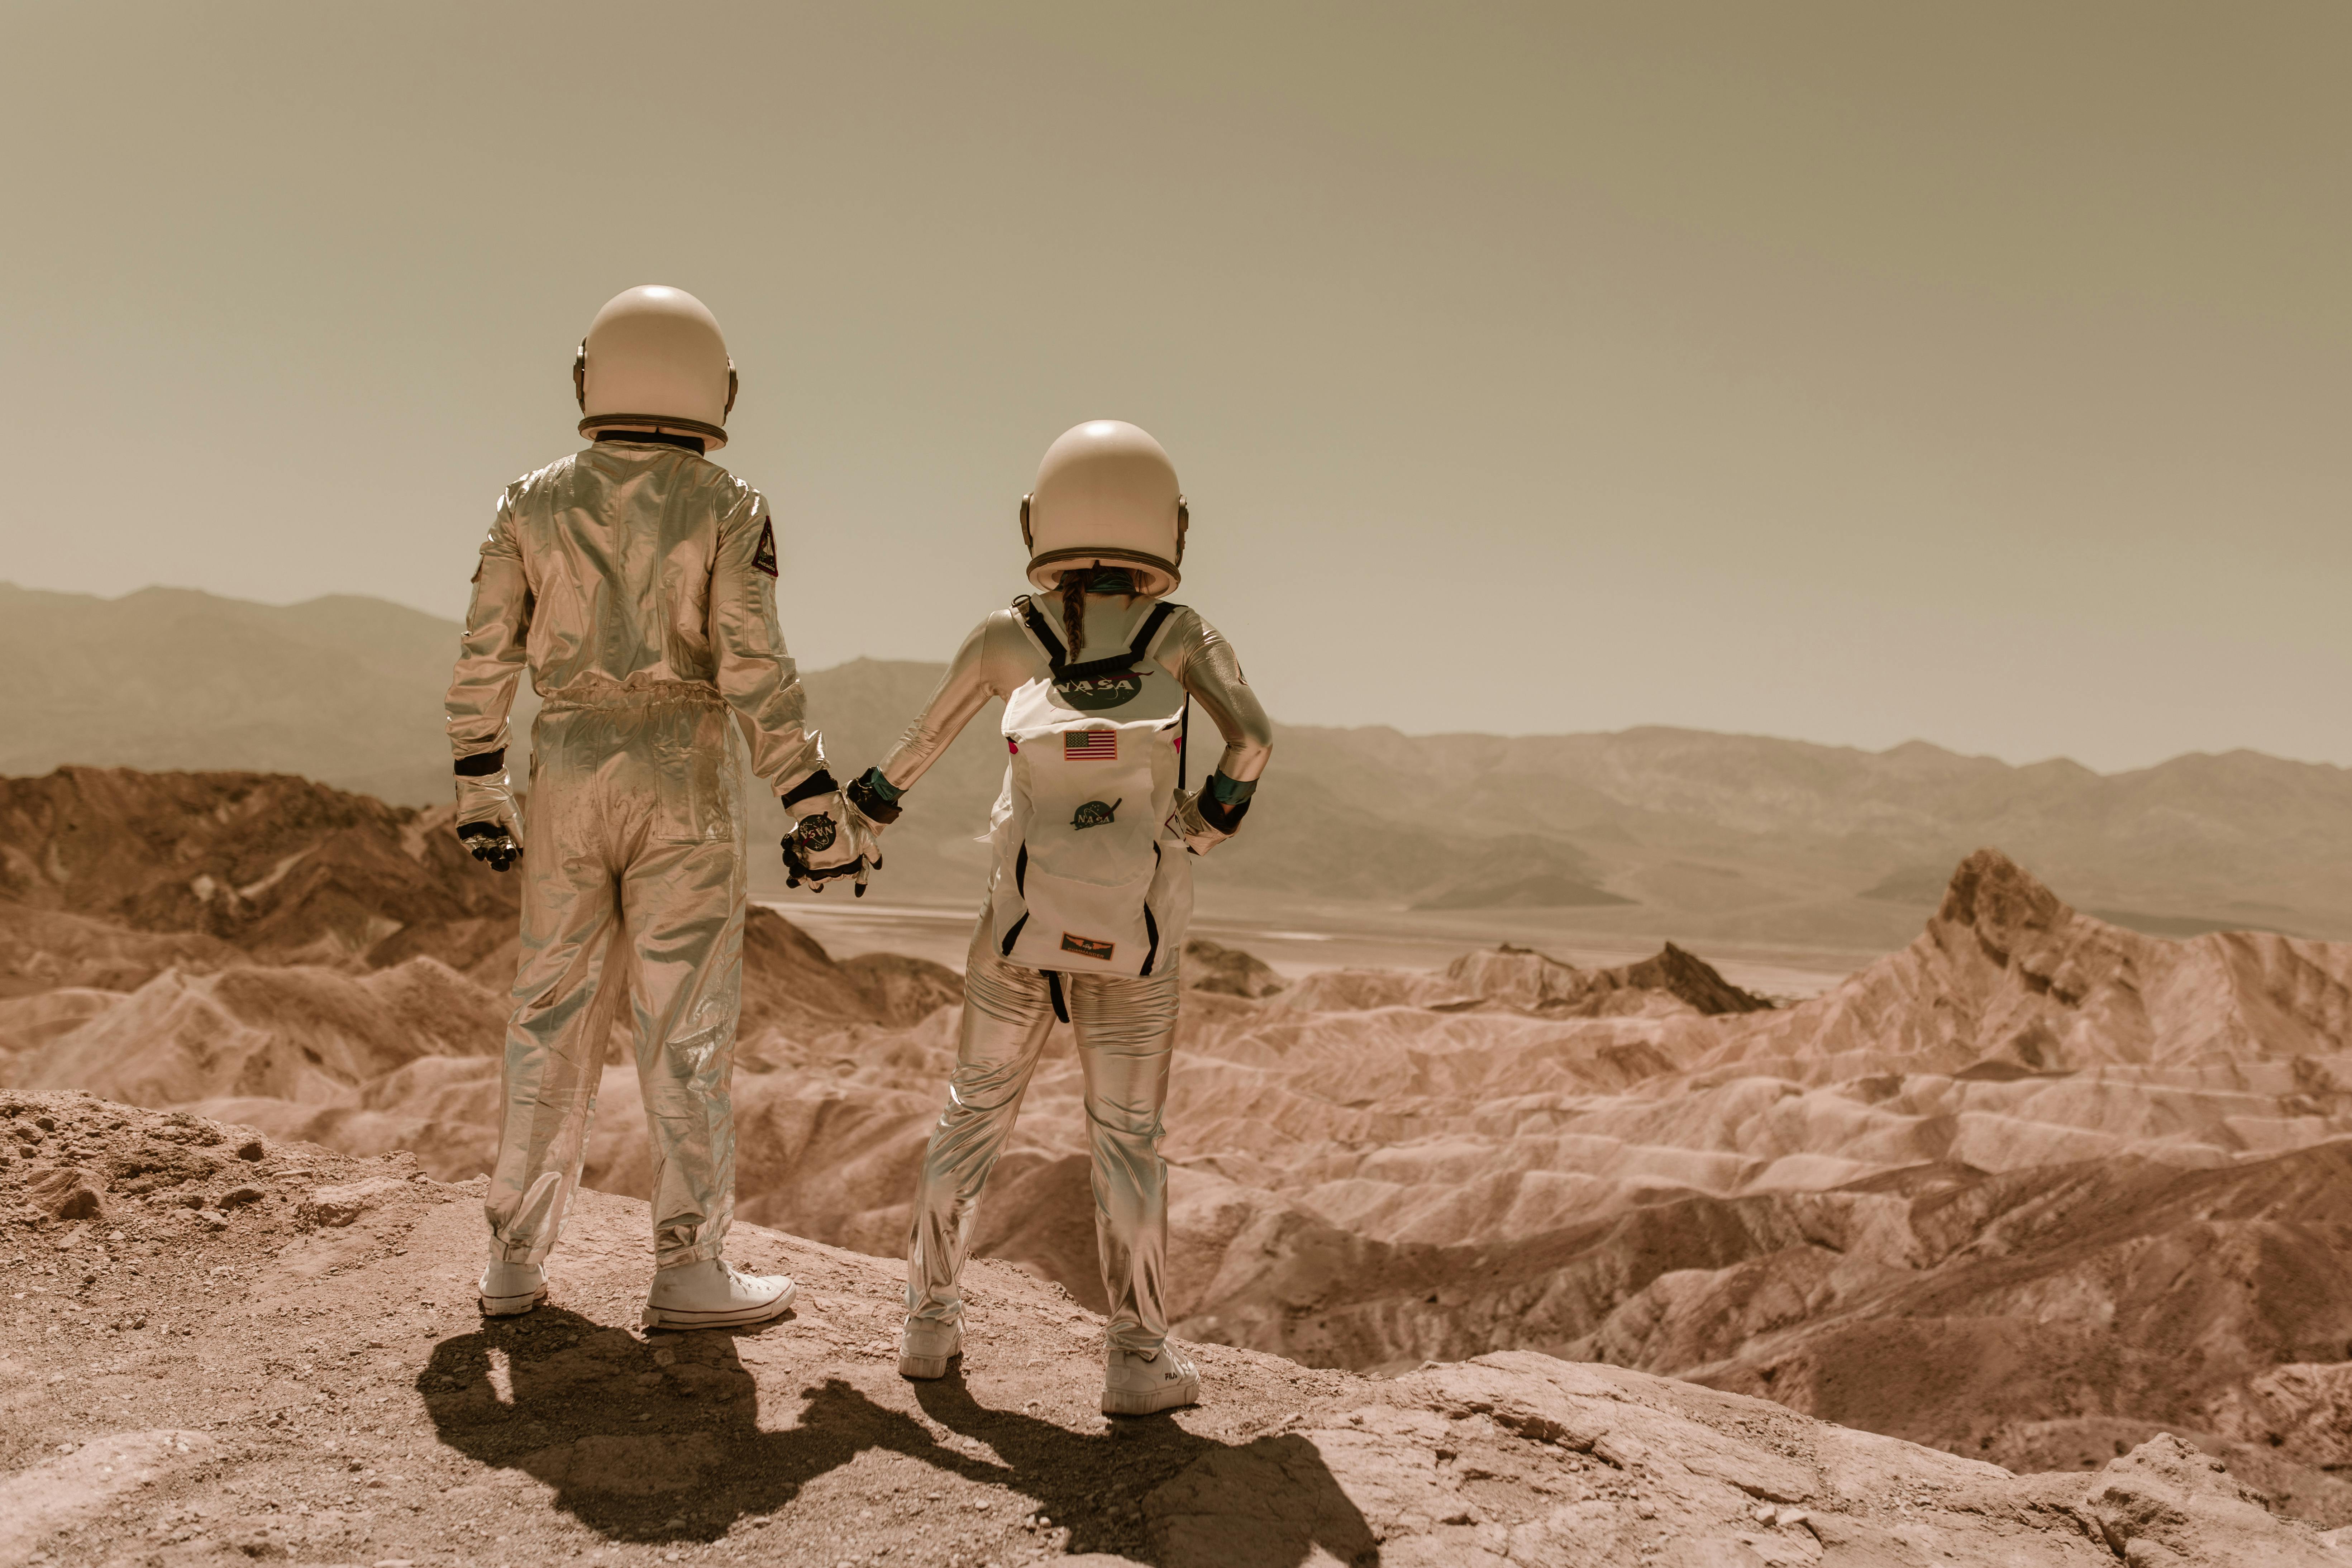 600+ melhores imagens de Marte · Download 100% grátis · Fotos profissionais  do Pexels